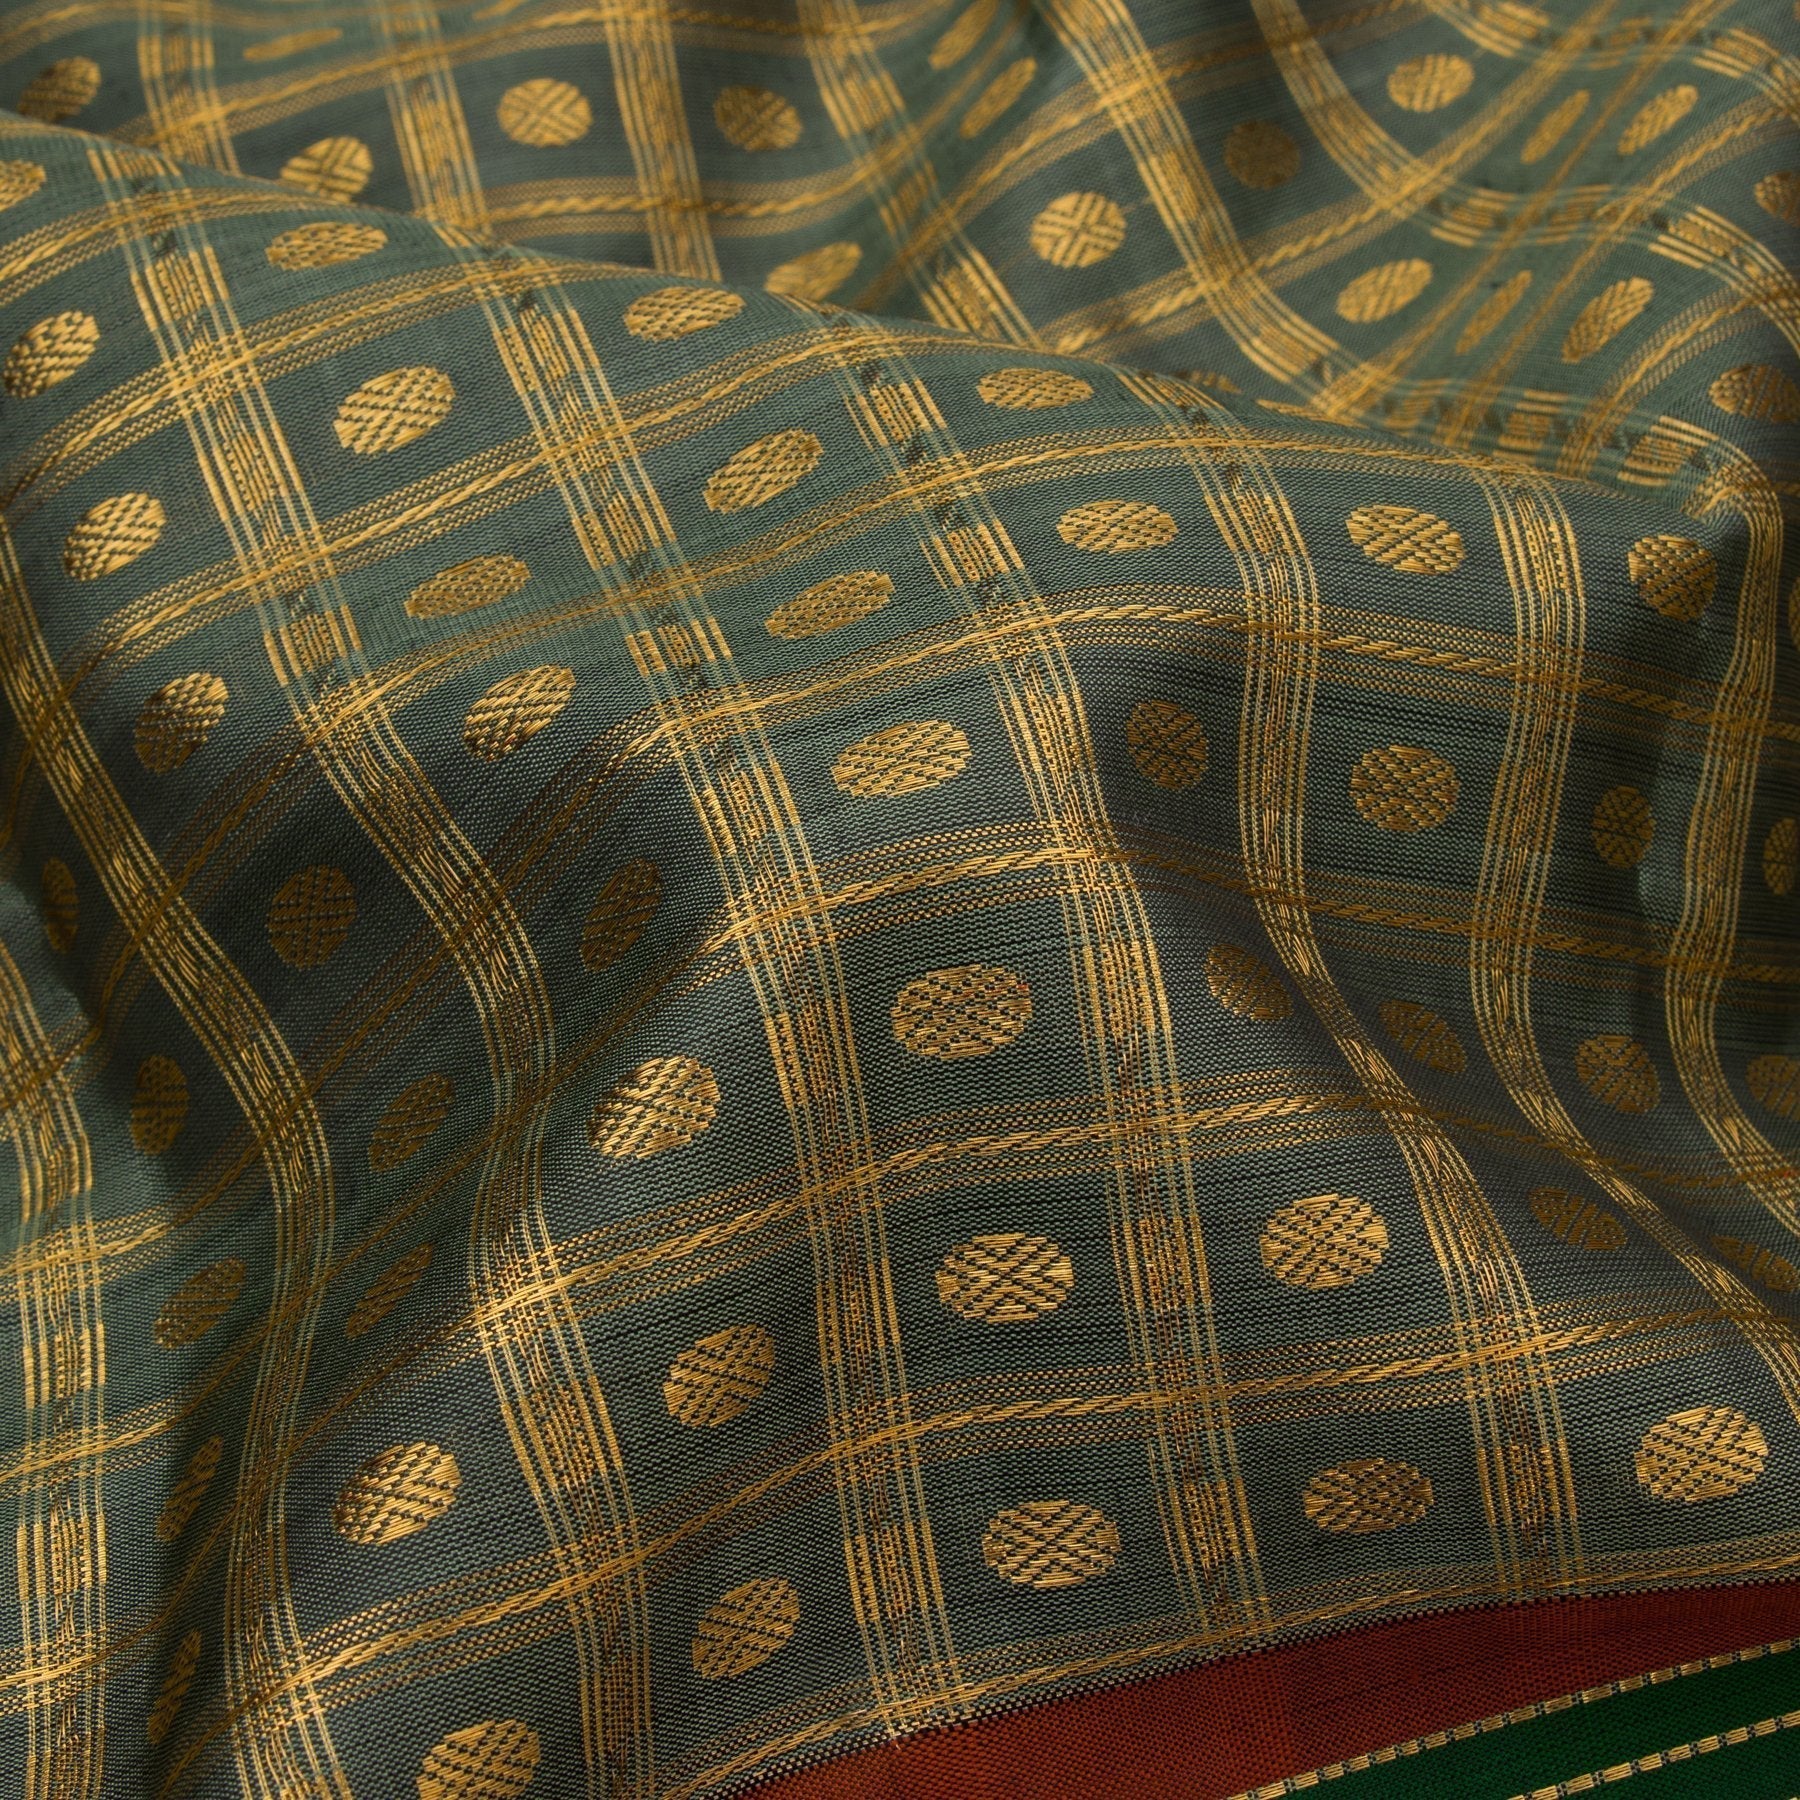 Kanakavalli Kanjivaram Silk Sari 21-040-HS001-01495 - Fabric View